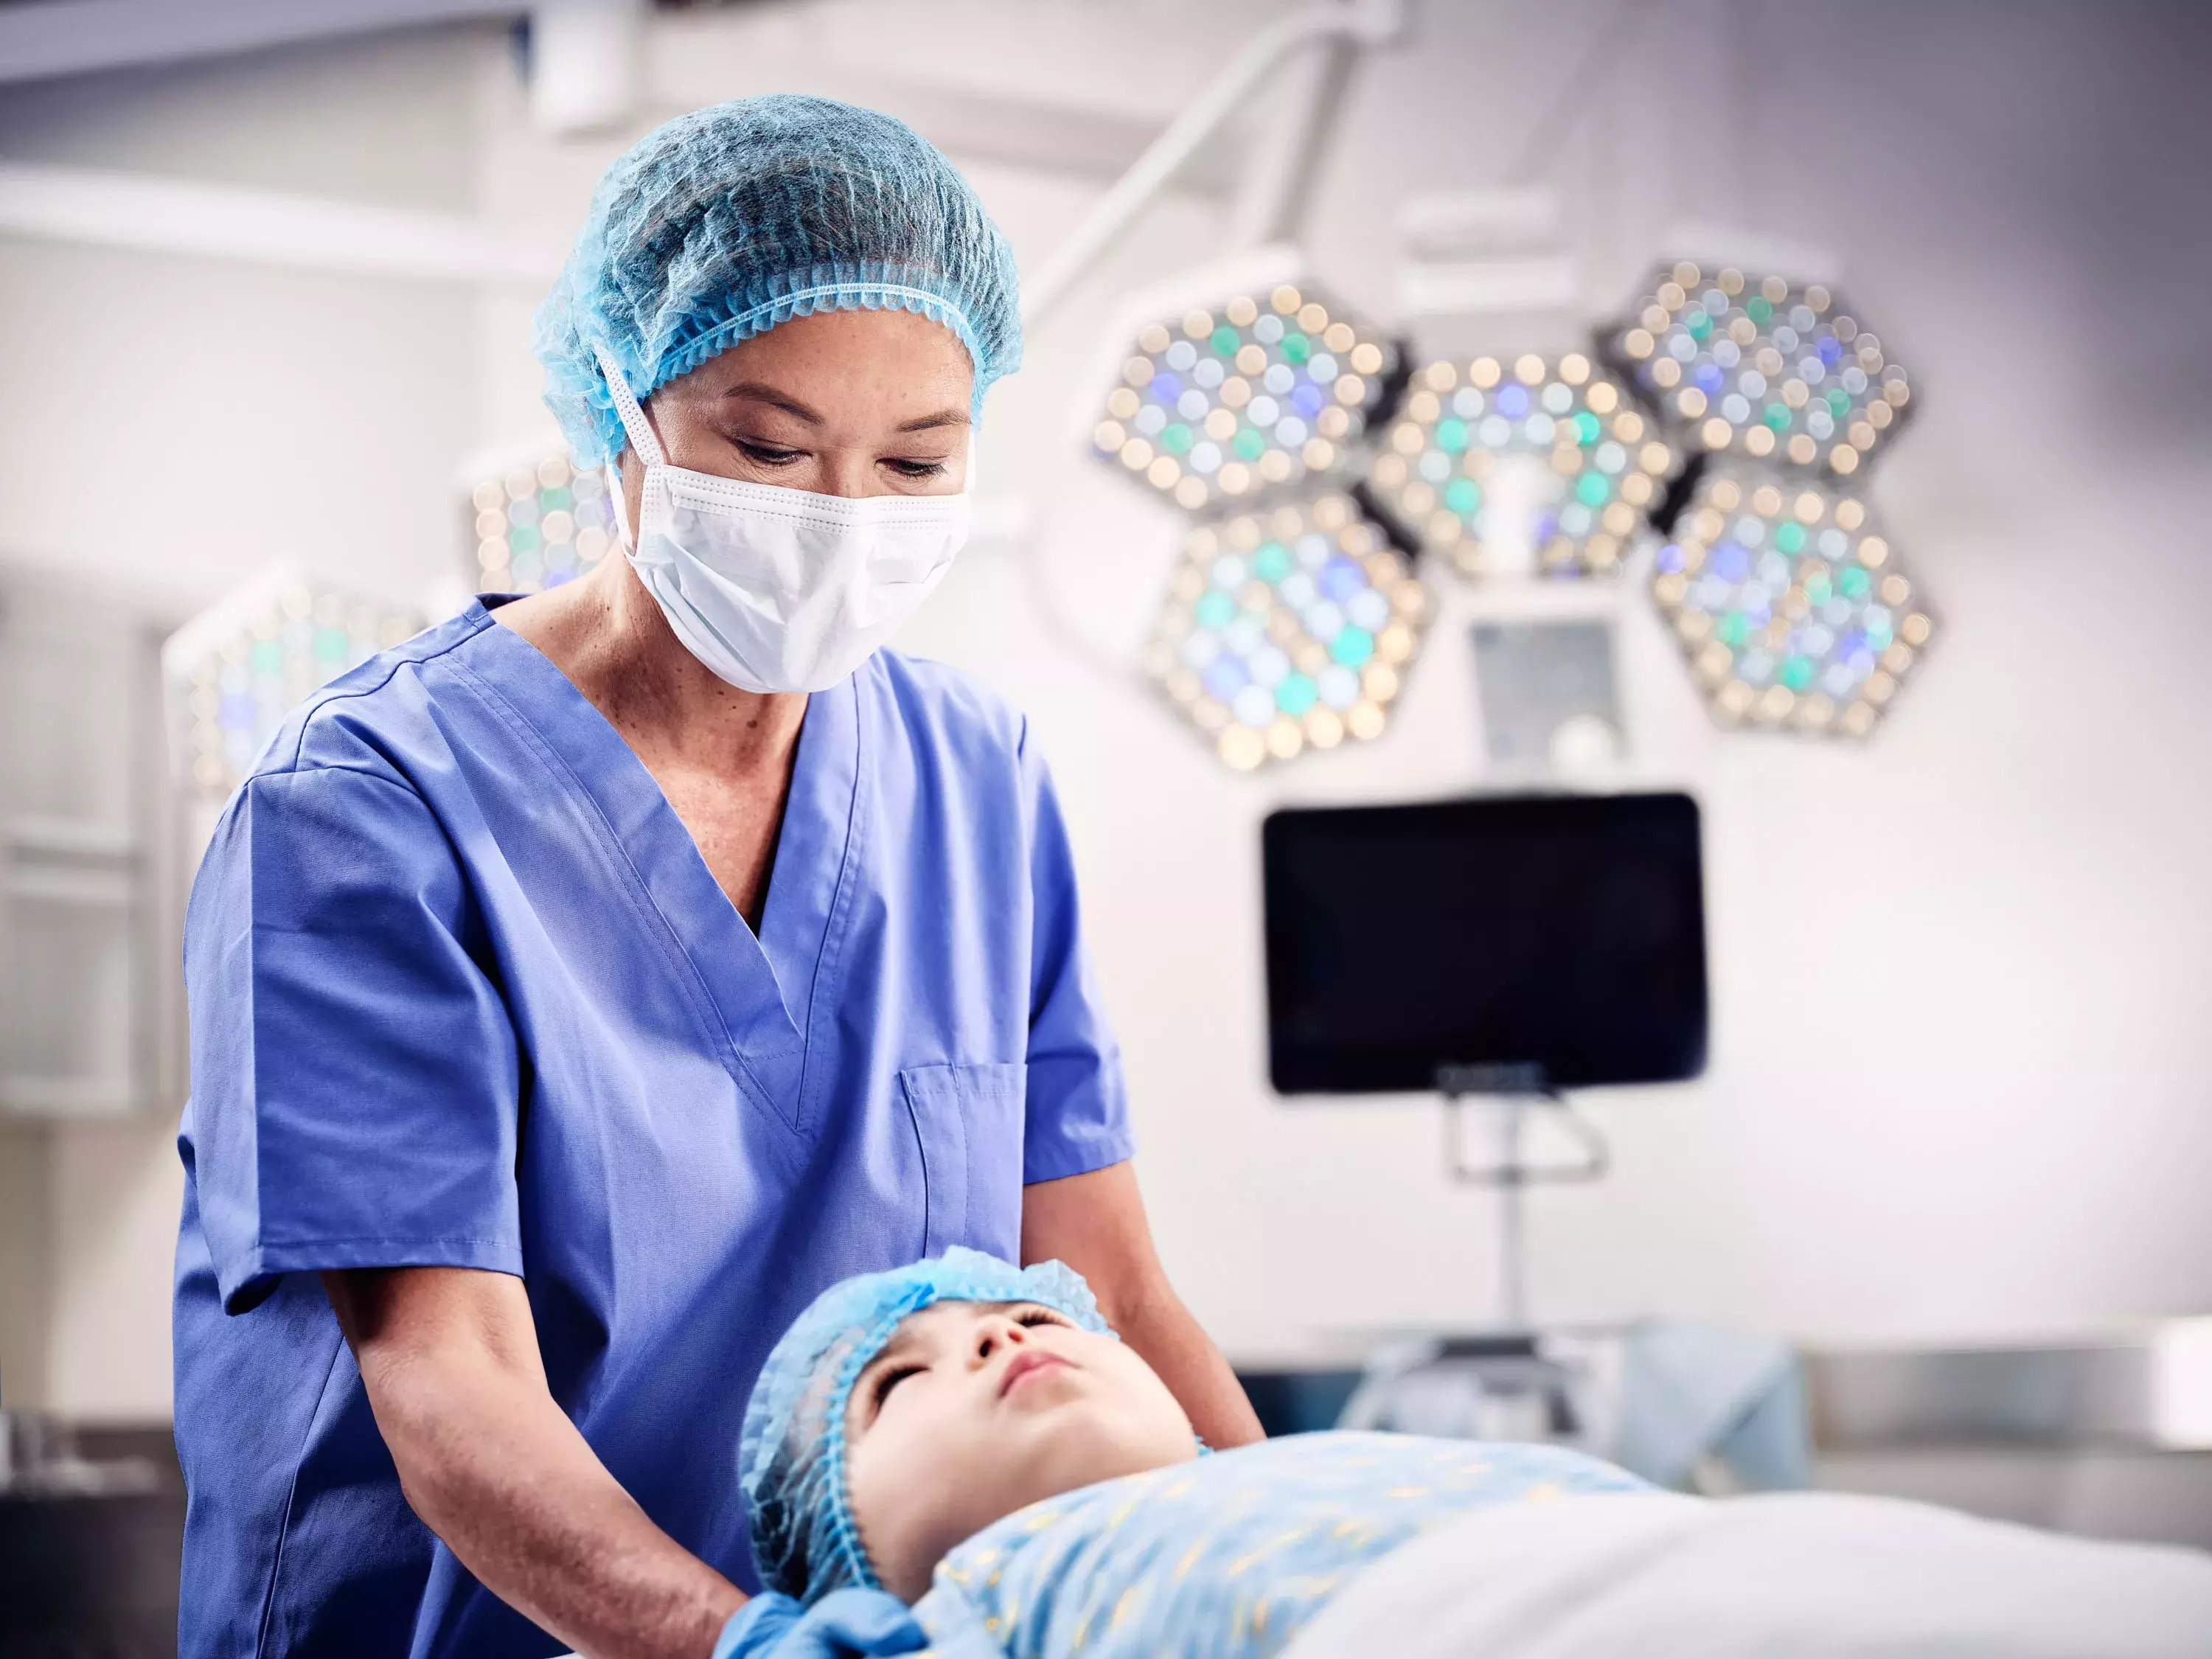 Pediatric-Airway-Devices-for-Laryngoscopy-and-Bronchoscopy